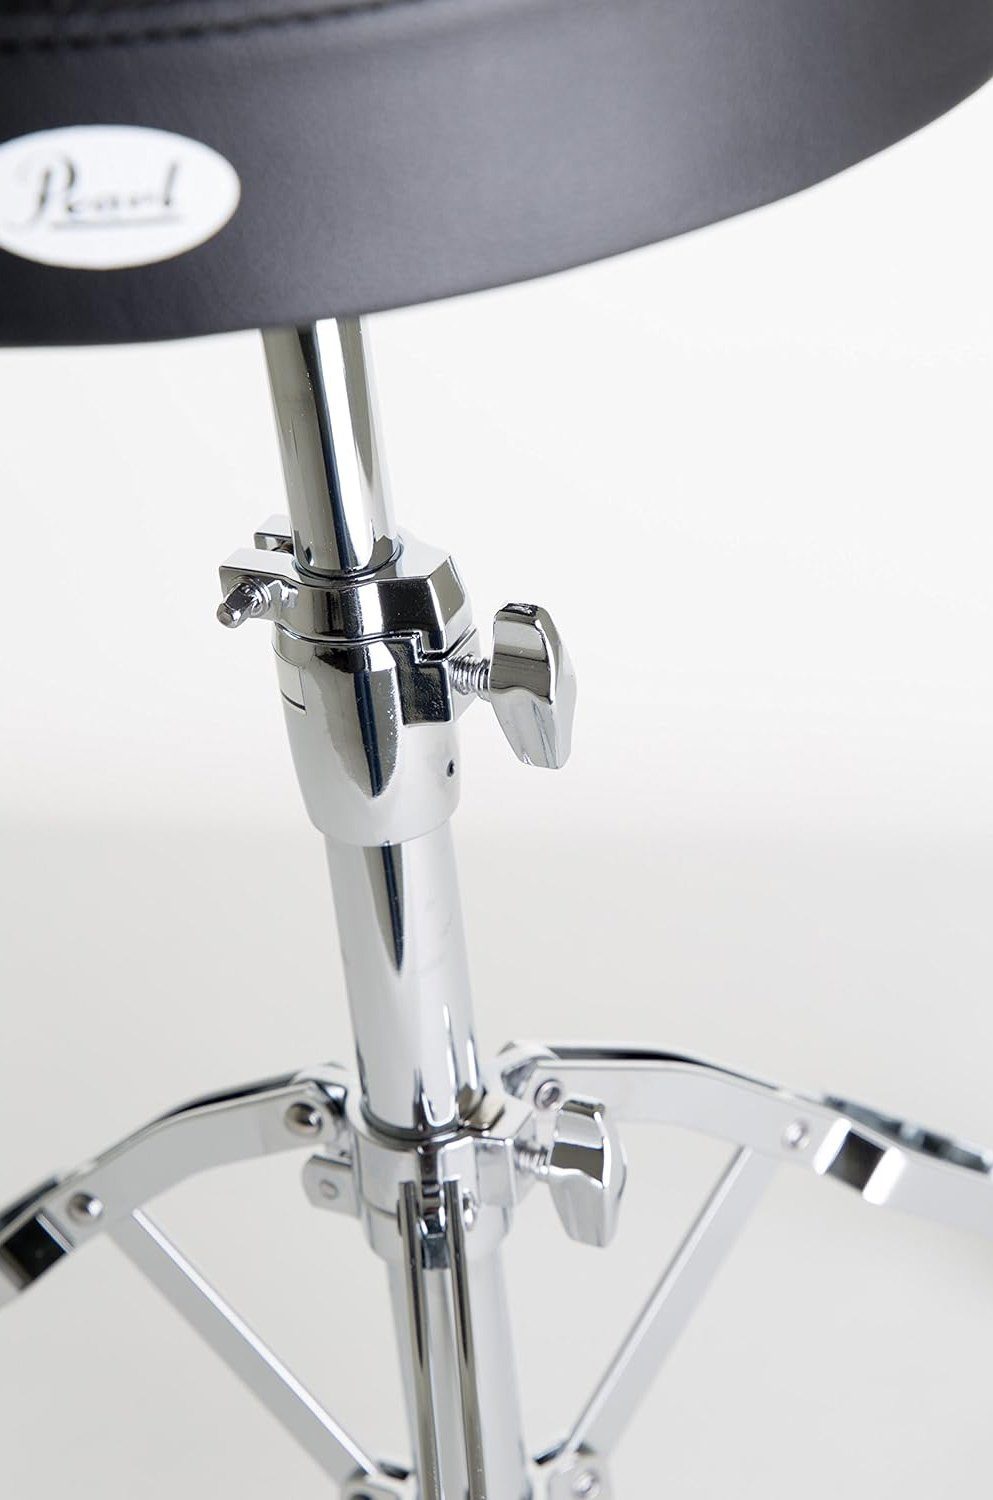 D-790 Pearl schwarz), Drums Höhenverstellbar Schlagzeughocker (Rundsitz,